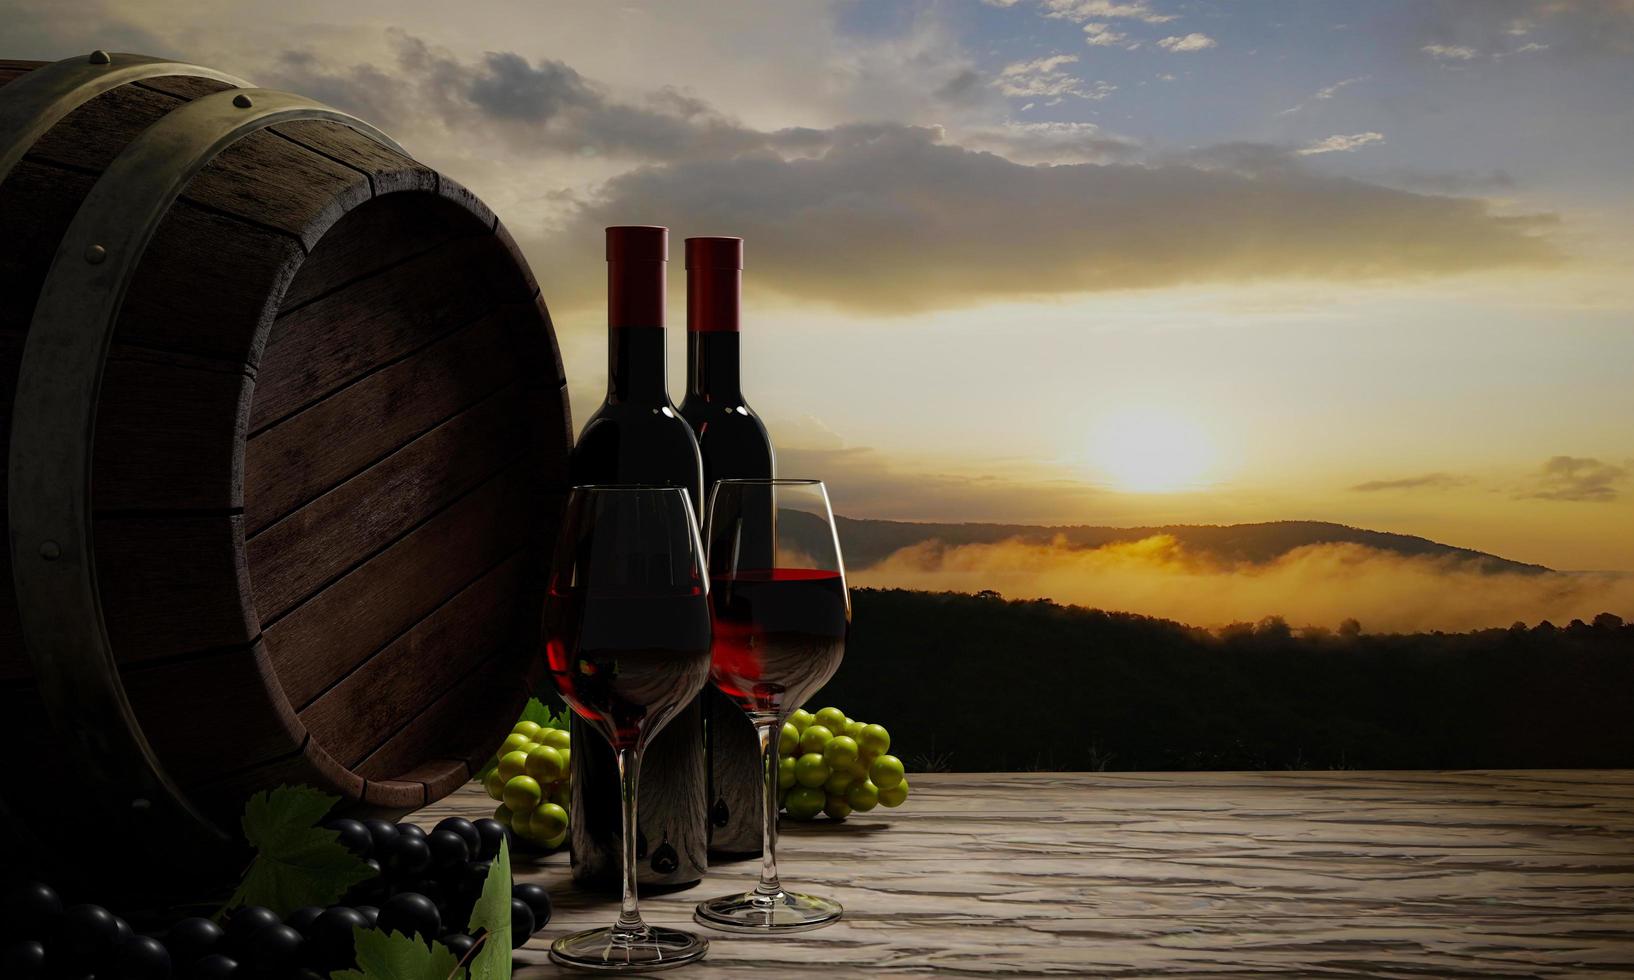 rode wijn in helder glas, rode druiven, groene druiven en wijngistingstank op een tafel met een houten vloer of boomschors. de achtergrondafbeelding was een ochtendberg. mist en ochtendzon.3D-rendering foto